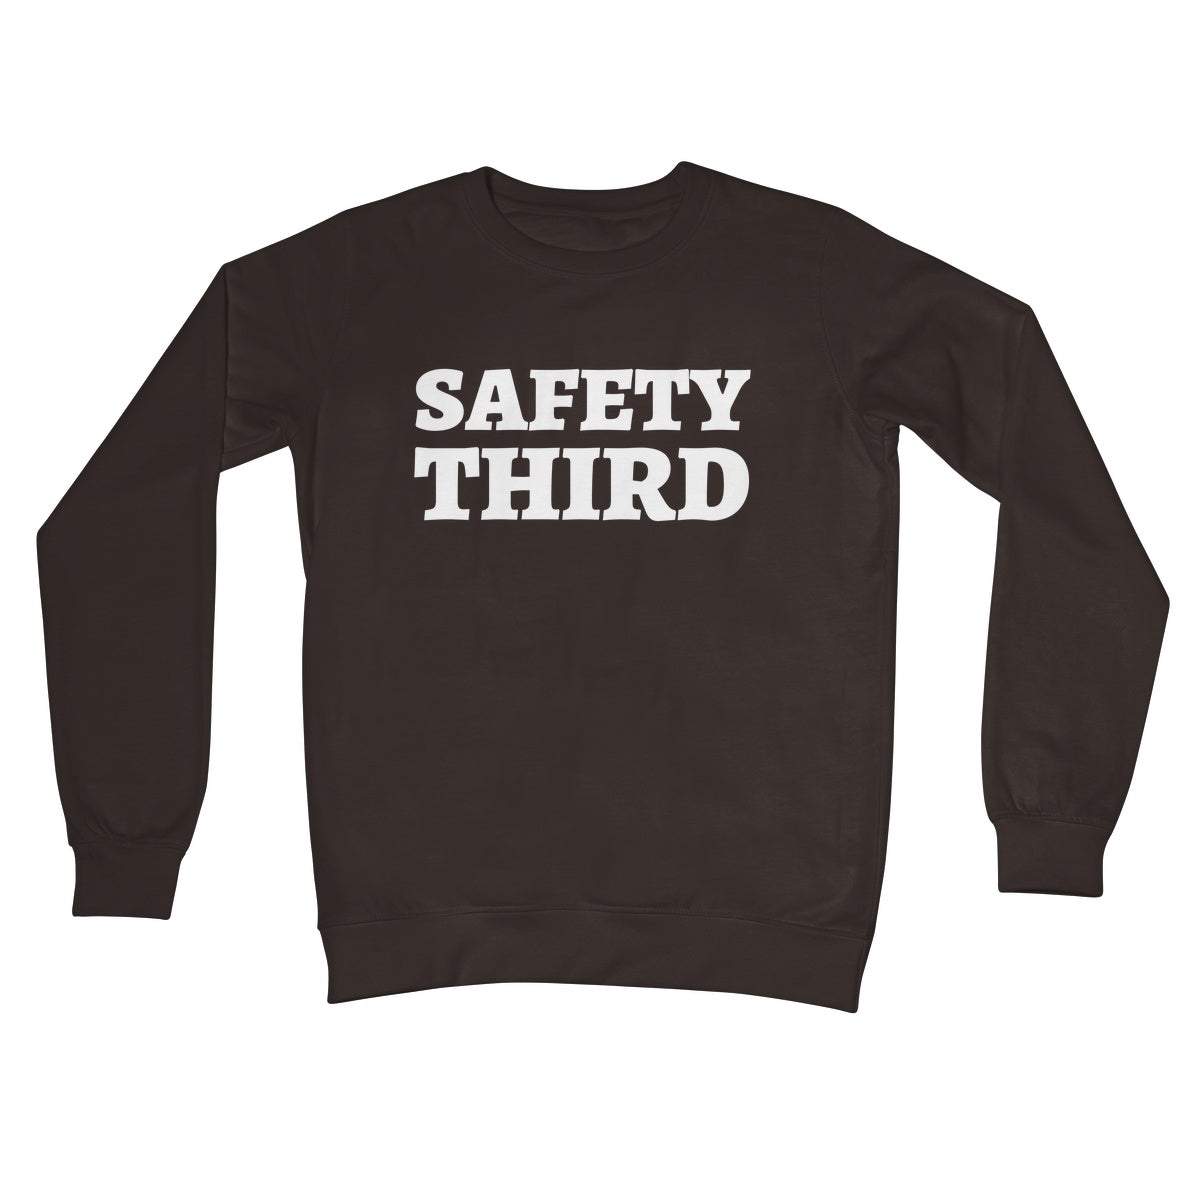 safety third jumper brown